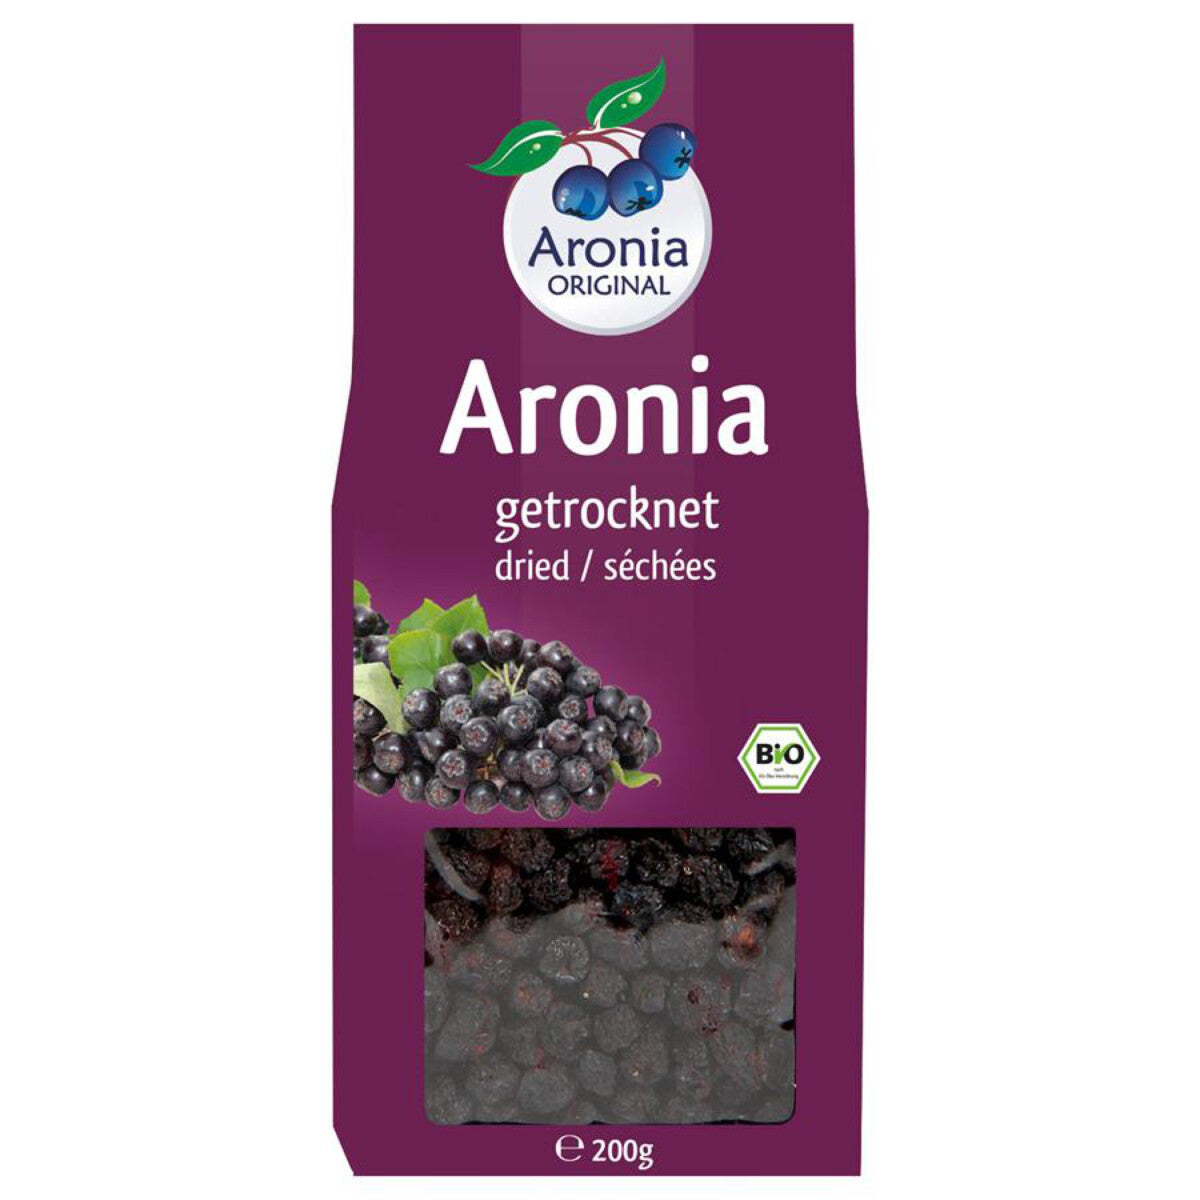 ARONIA ORIGINAL Aroniabeeren getrocknet - 200 g